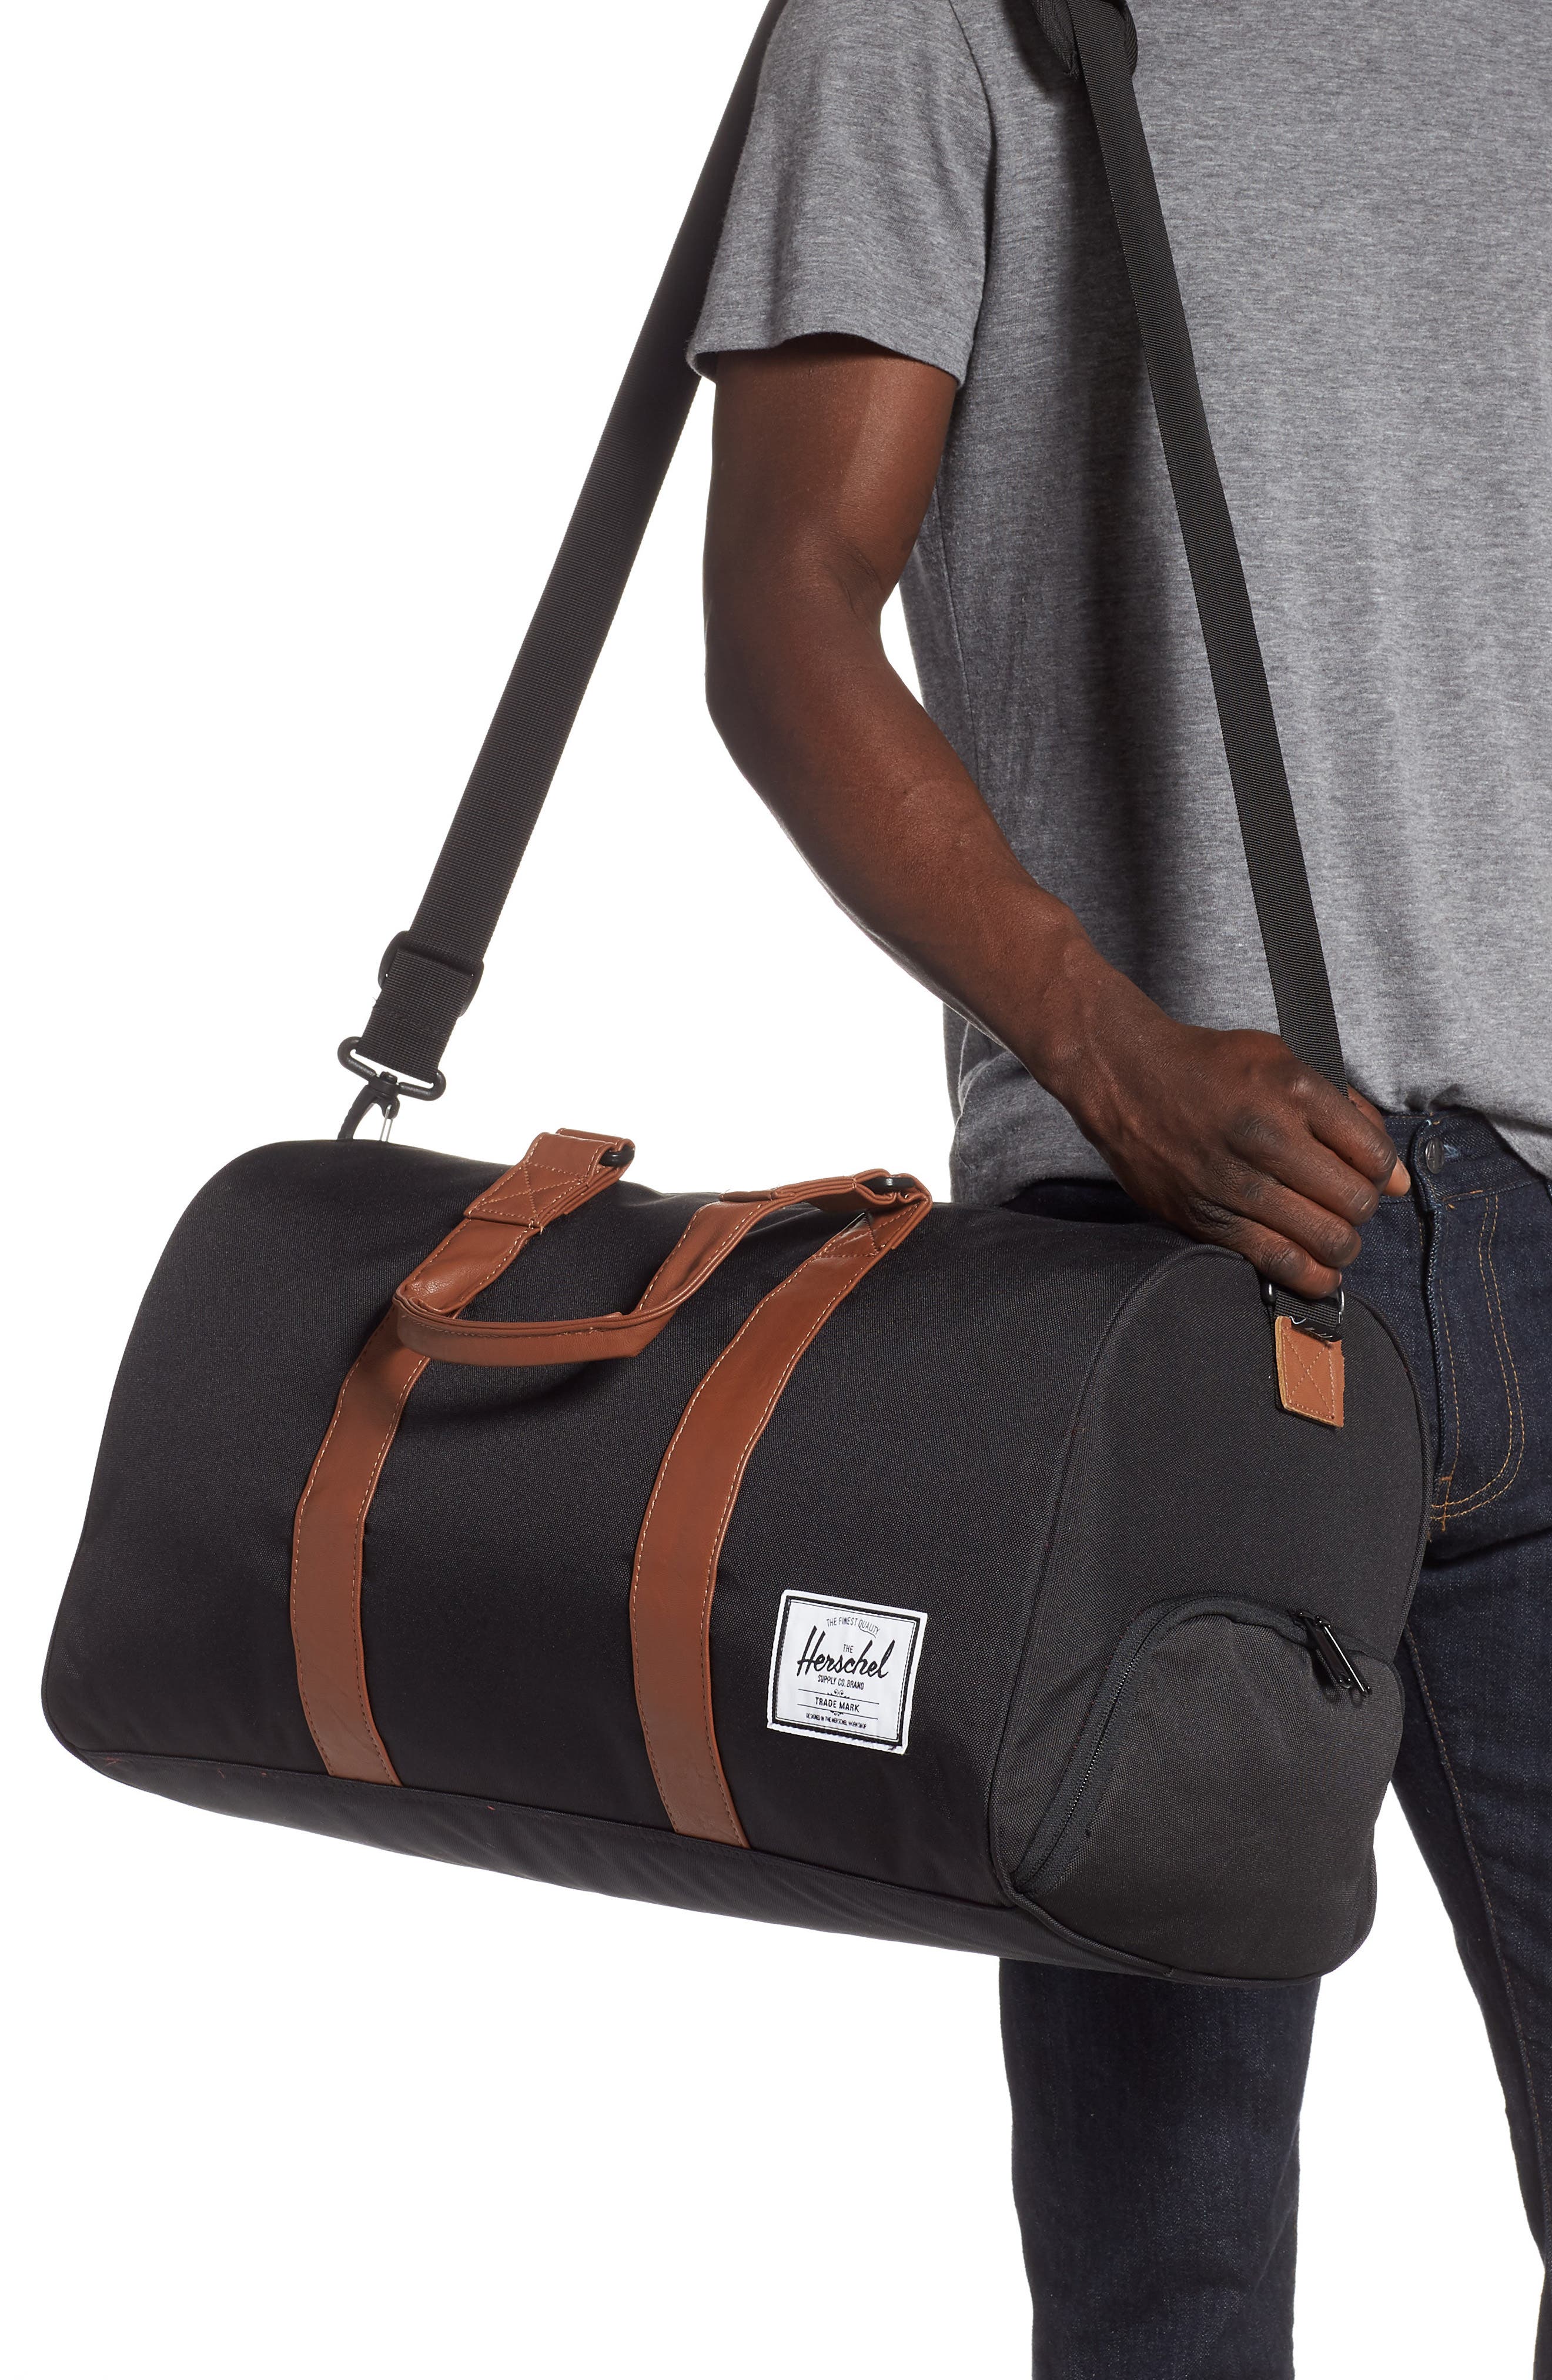 Mens Bags Duffel bags and weekend bags Herschel Bag for Men Herschel Supply Co 